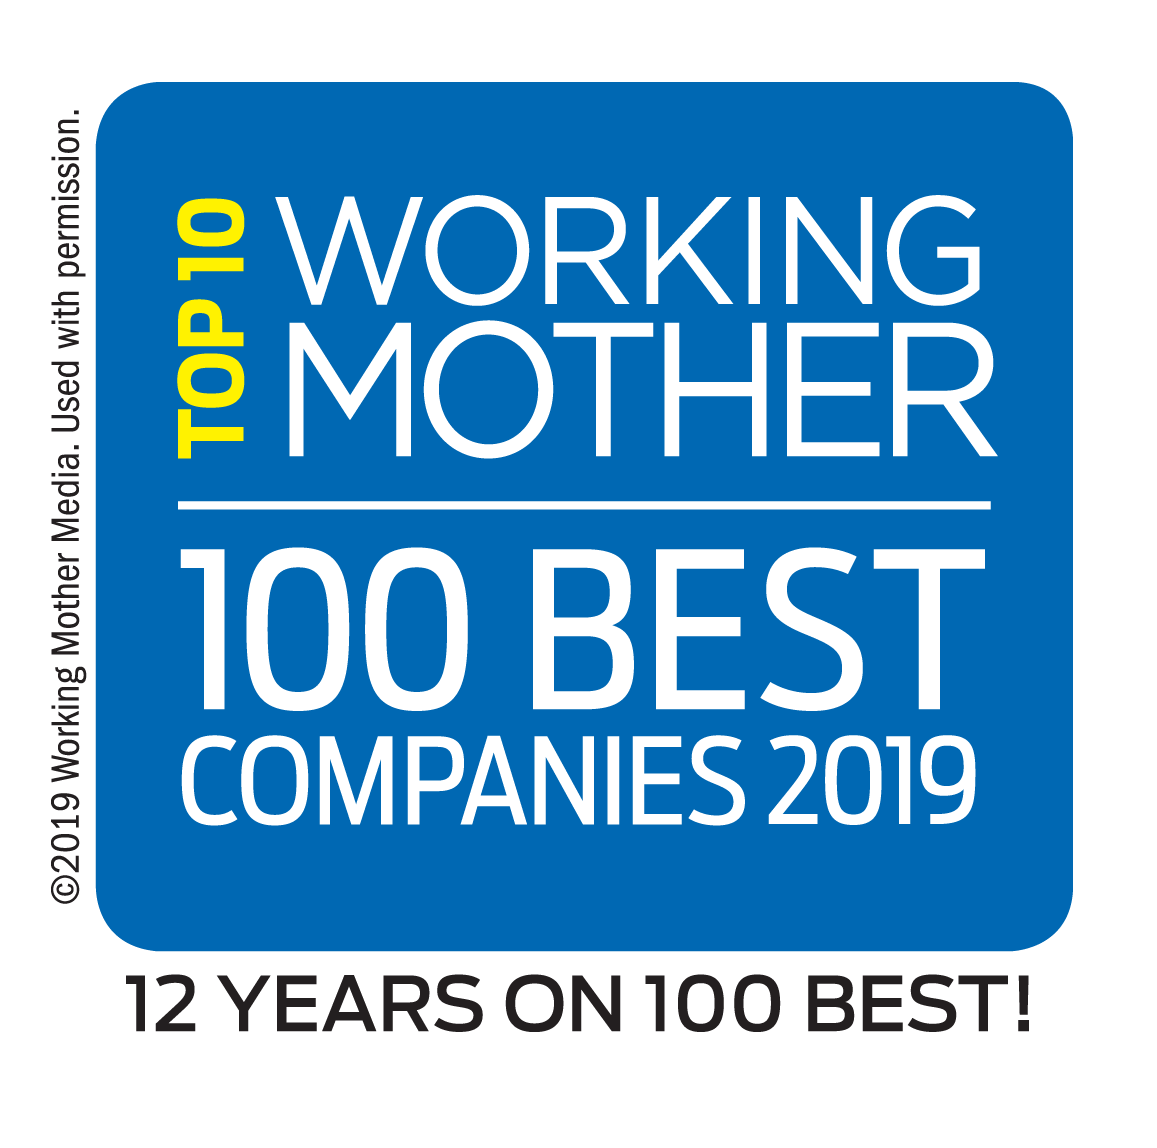 2018年工作母亲100家最佳公司